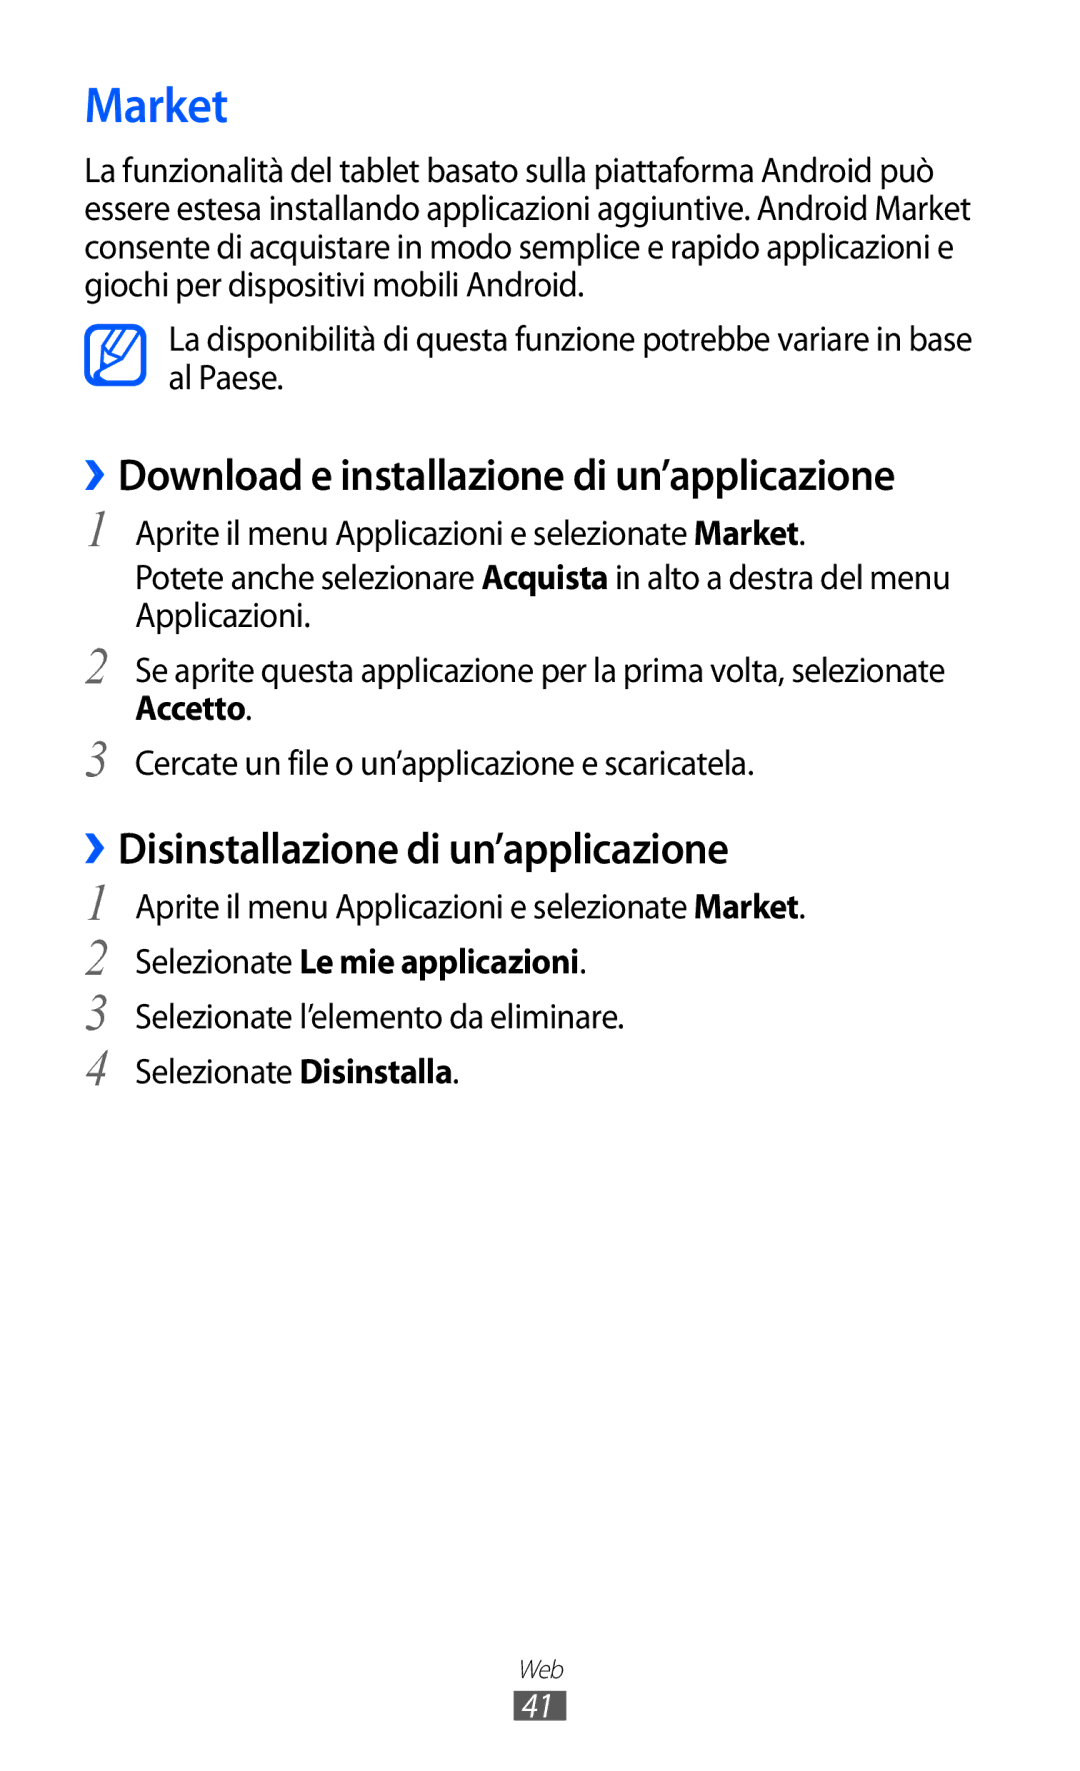 Samsung GT-P7300UWAITV manual Market, ››Download e installazione di un’applicazione, ››Disinstallazione di un’applicazione 